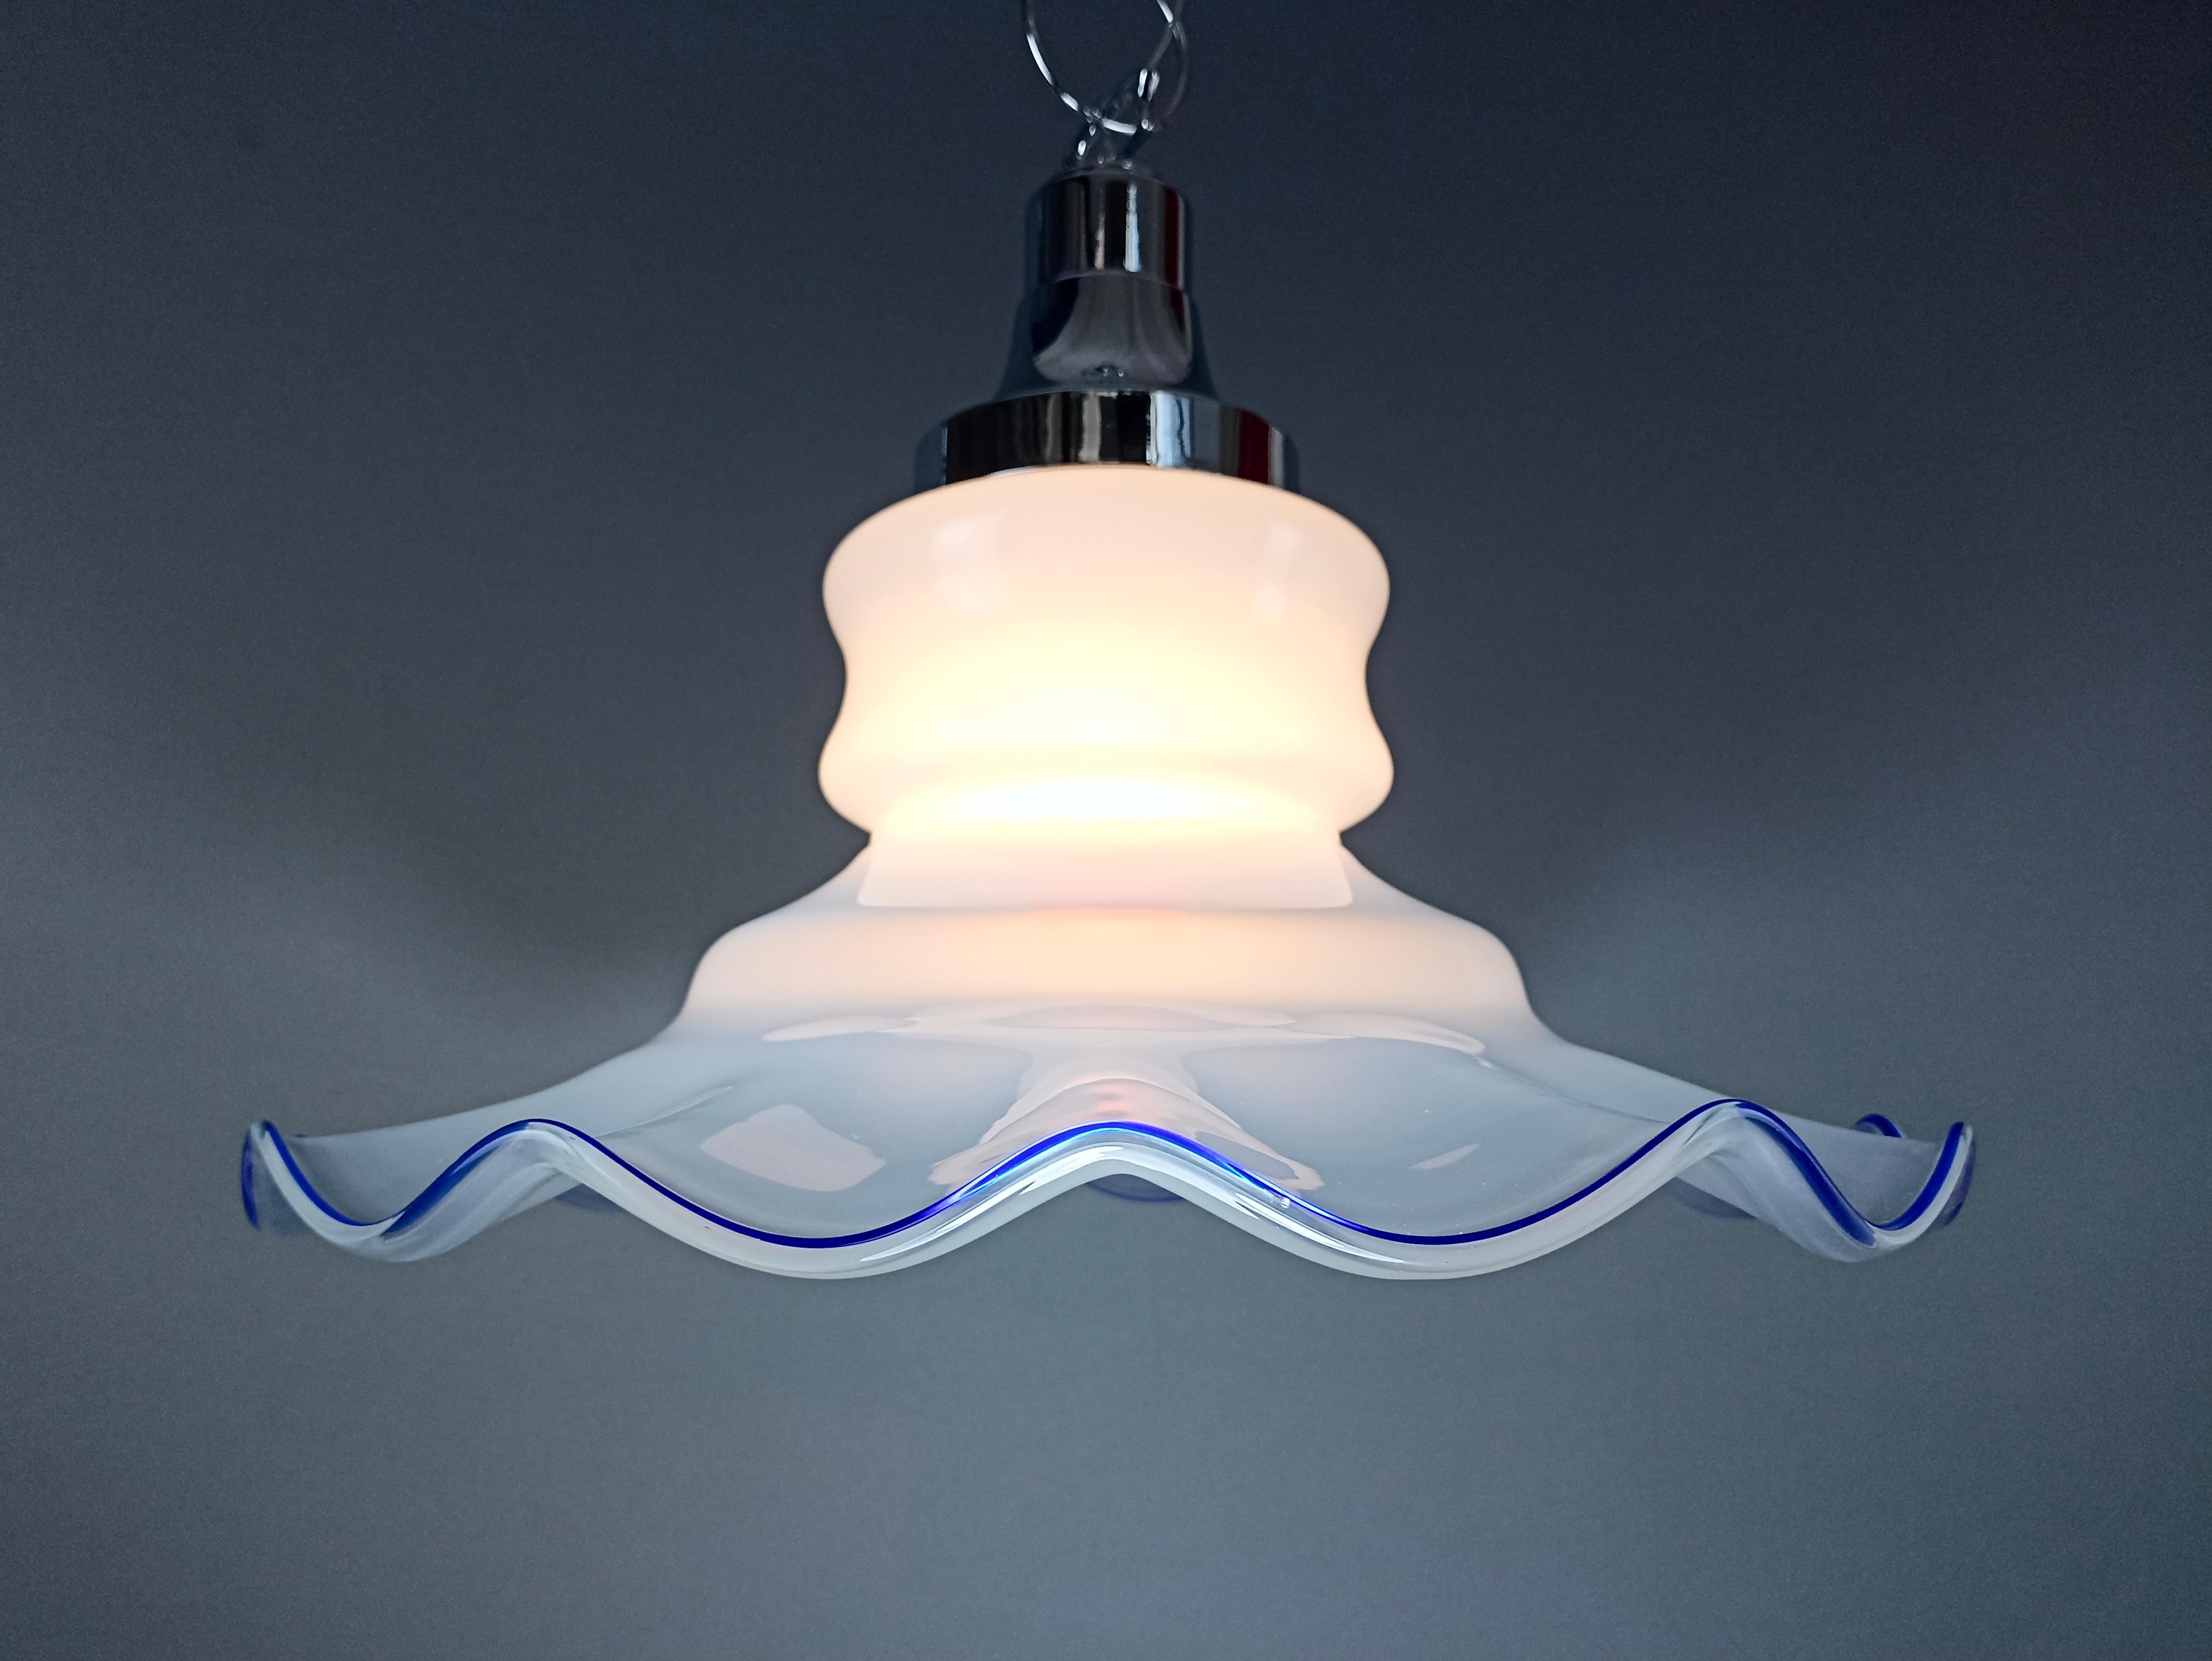 Fazzoletto en verre de Murano, grande lampe suspendue italienne fascinante à une lumière, datant des années 1970. Chaîne et cadre en métal chromé, abat-jour en verre d'art Murano 'Lattimo' blanc laiteux, nuancé vers le bord et avec une fine finition